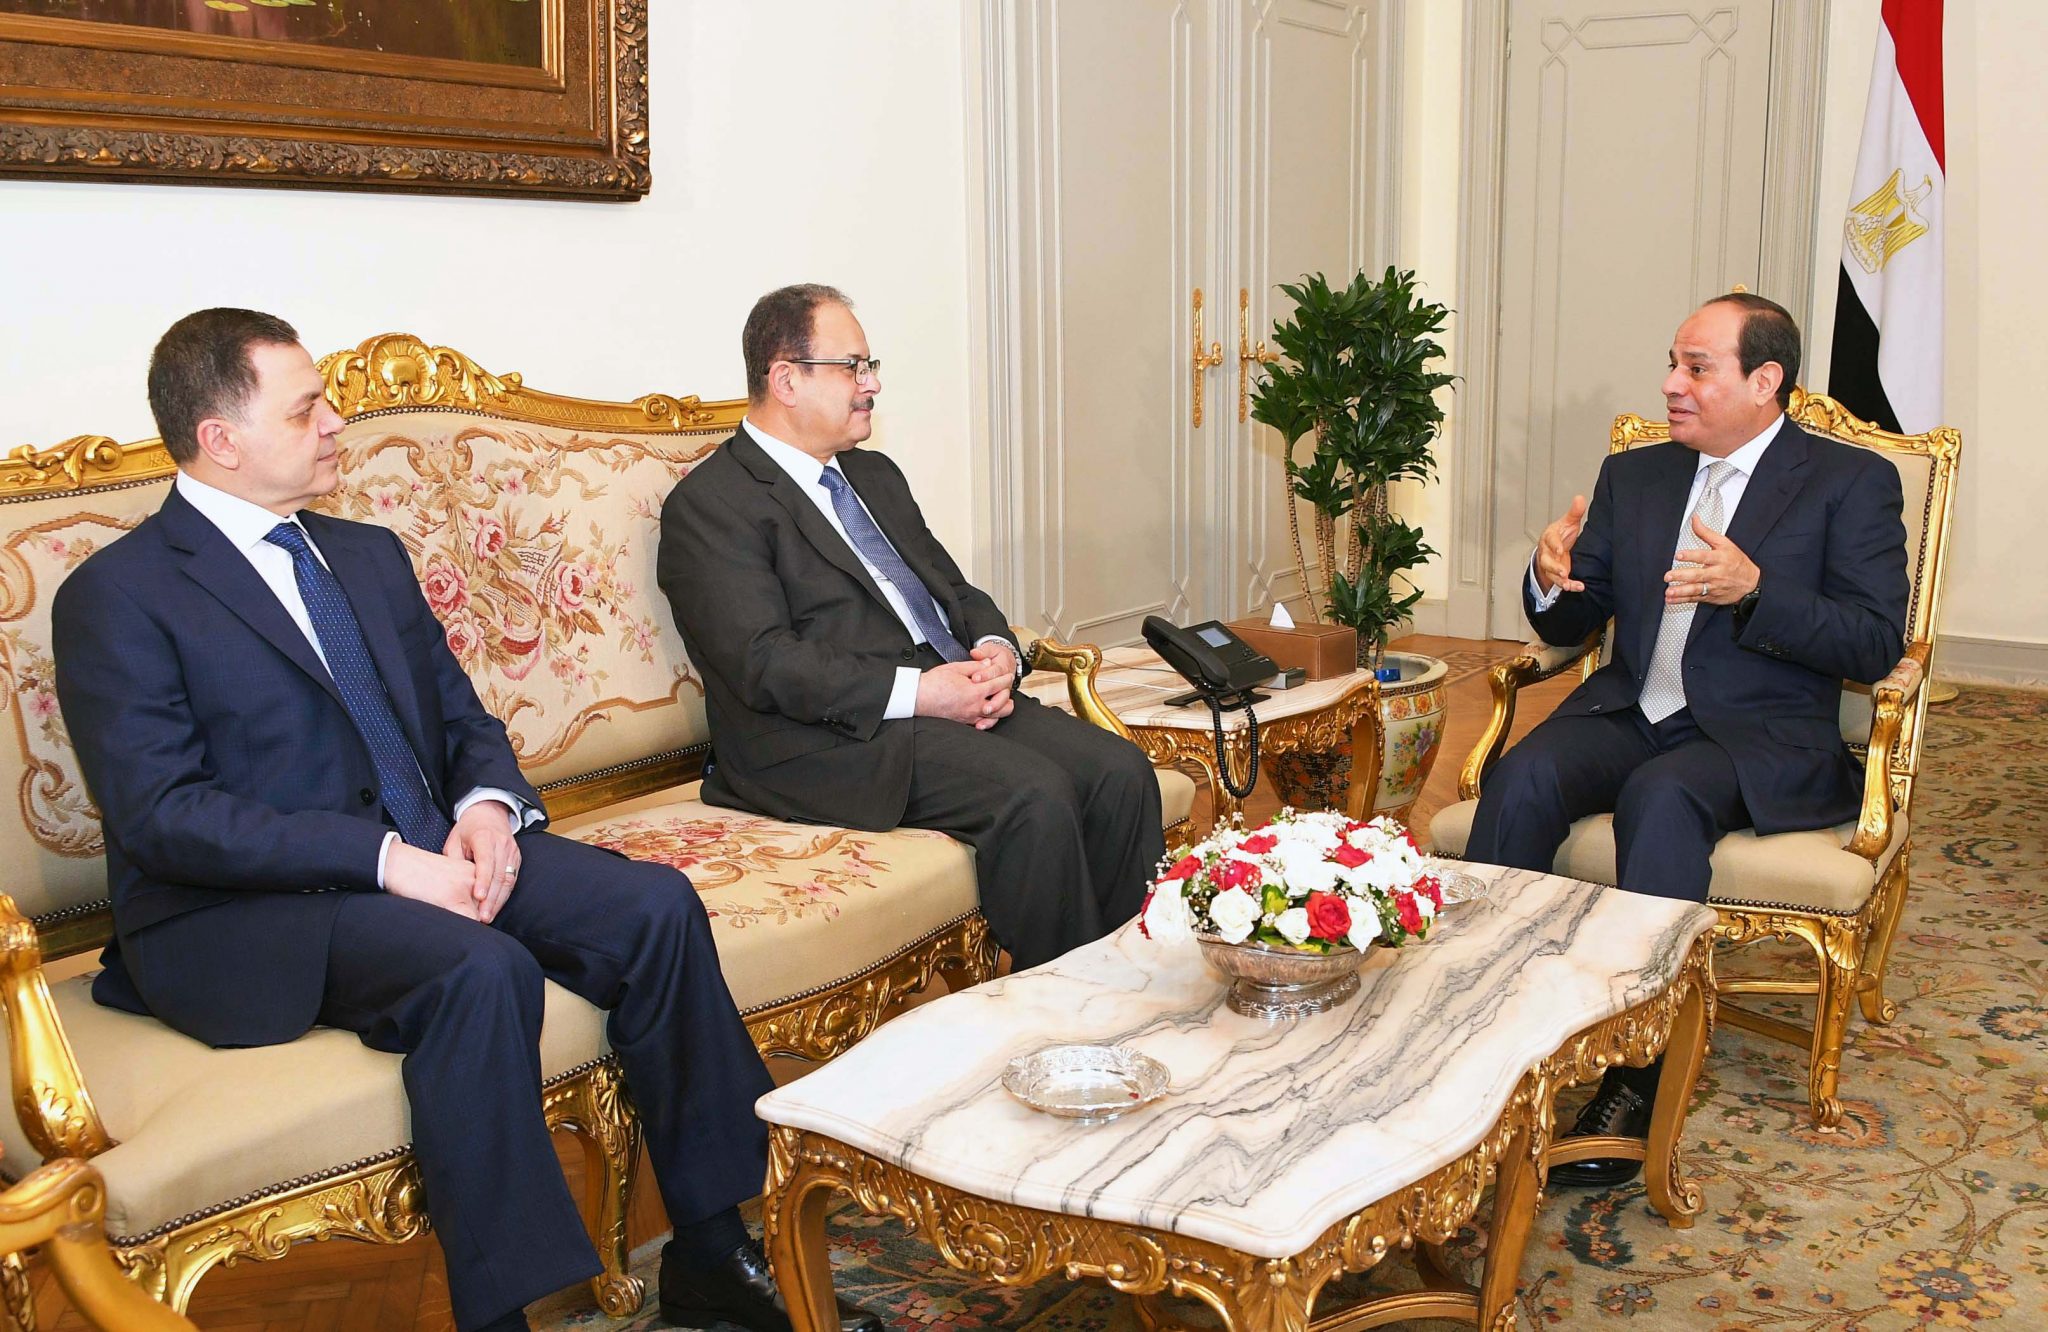   الرئيس يستقبل اللواء مجدي عبد الغفار ووزير الداخلية الجديد